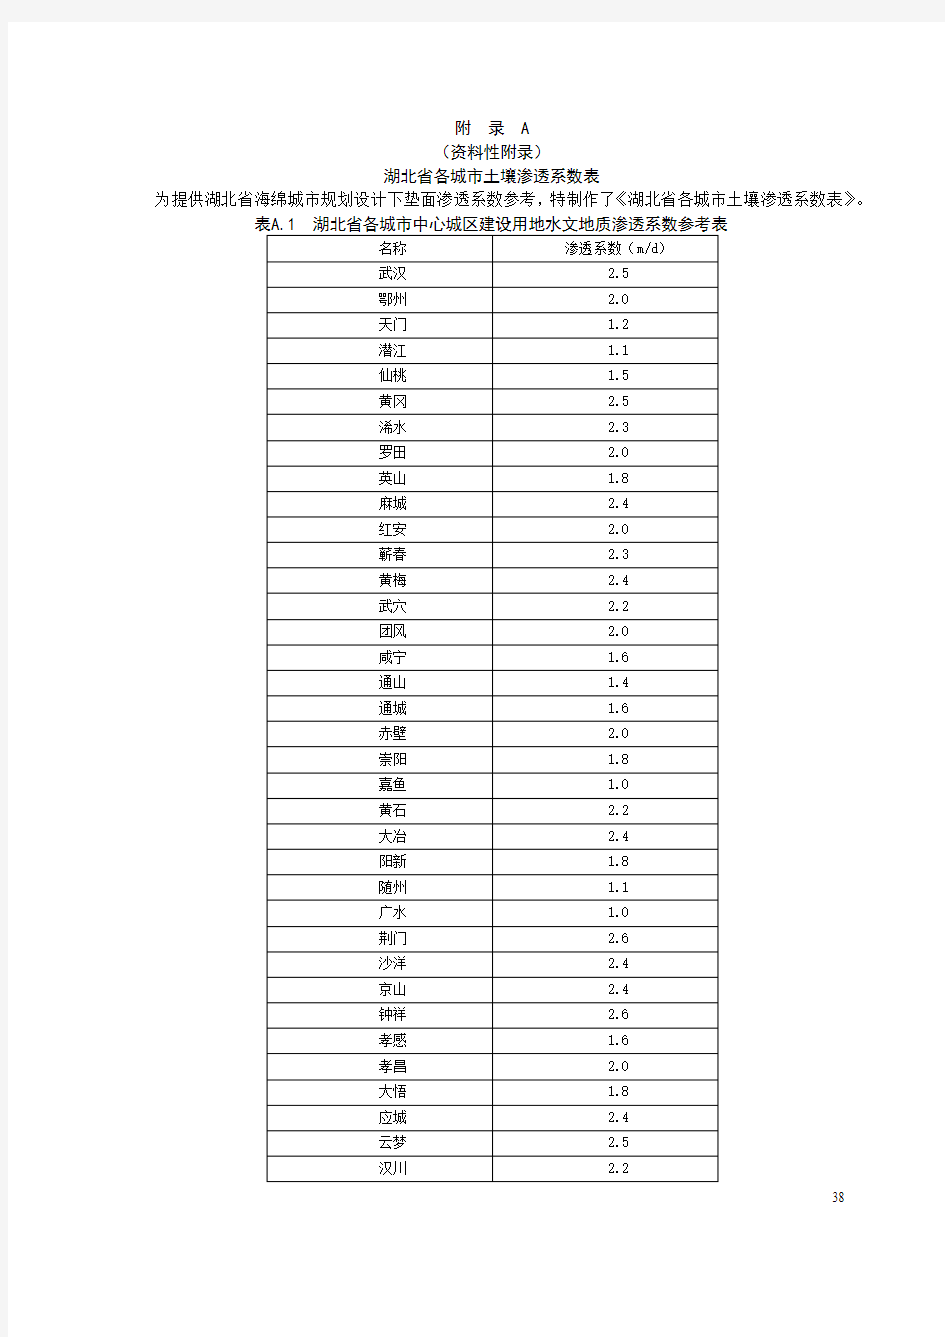 湖北省各城市土壤渗透系数表